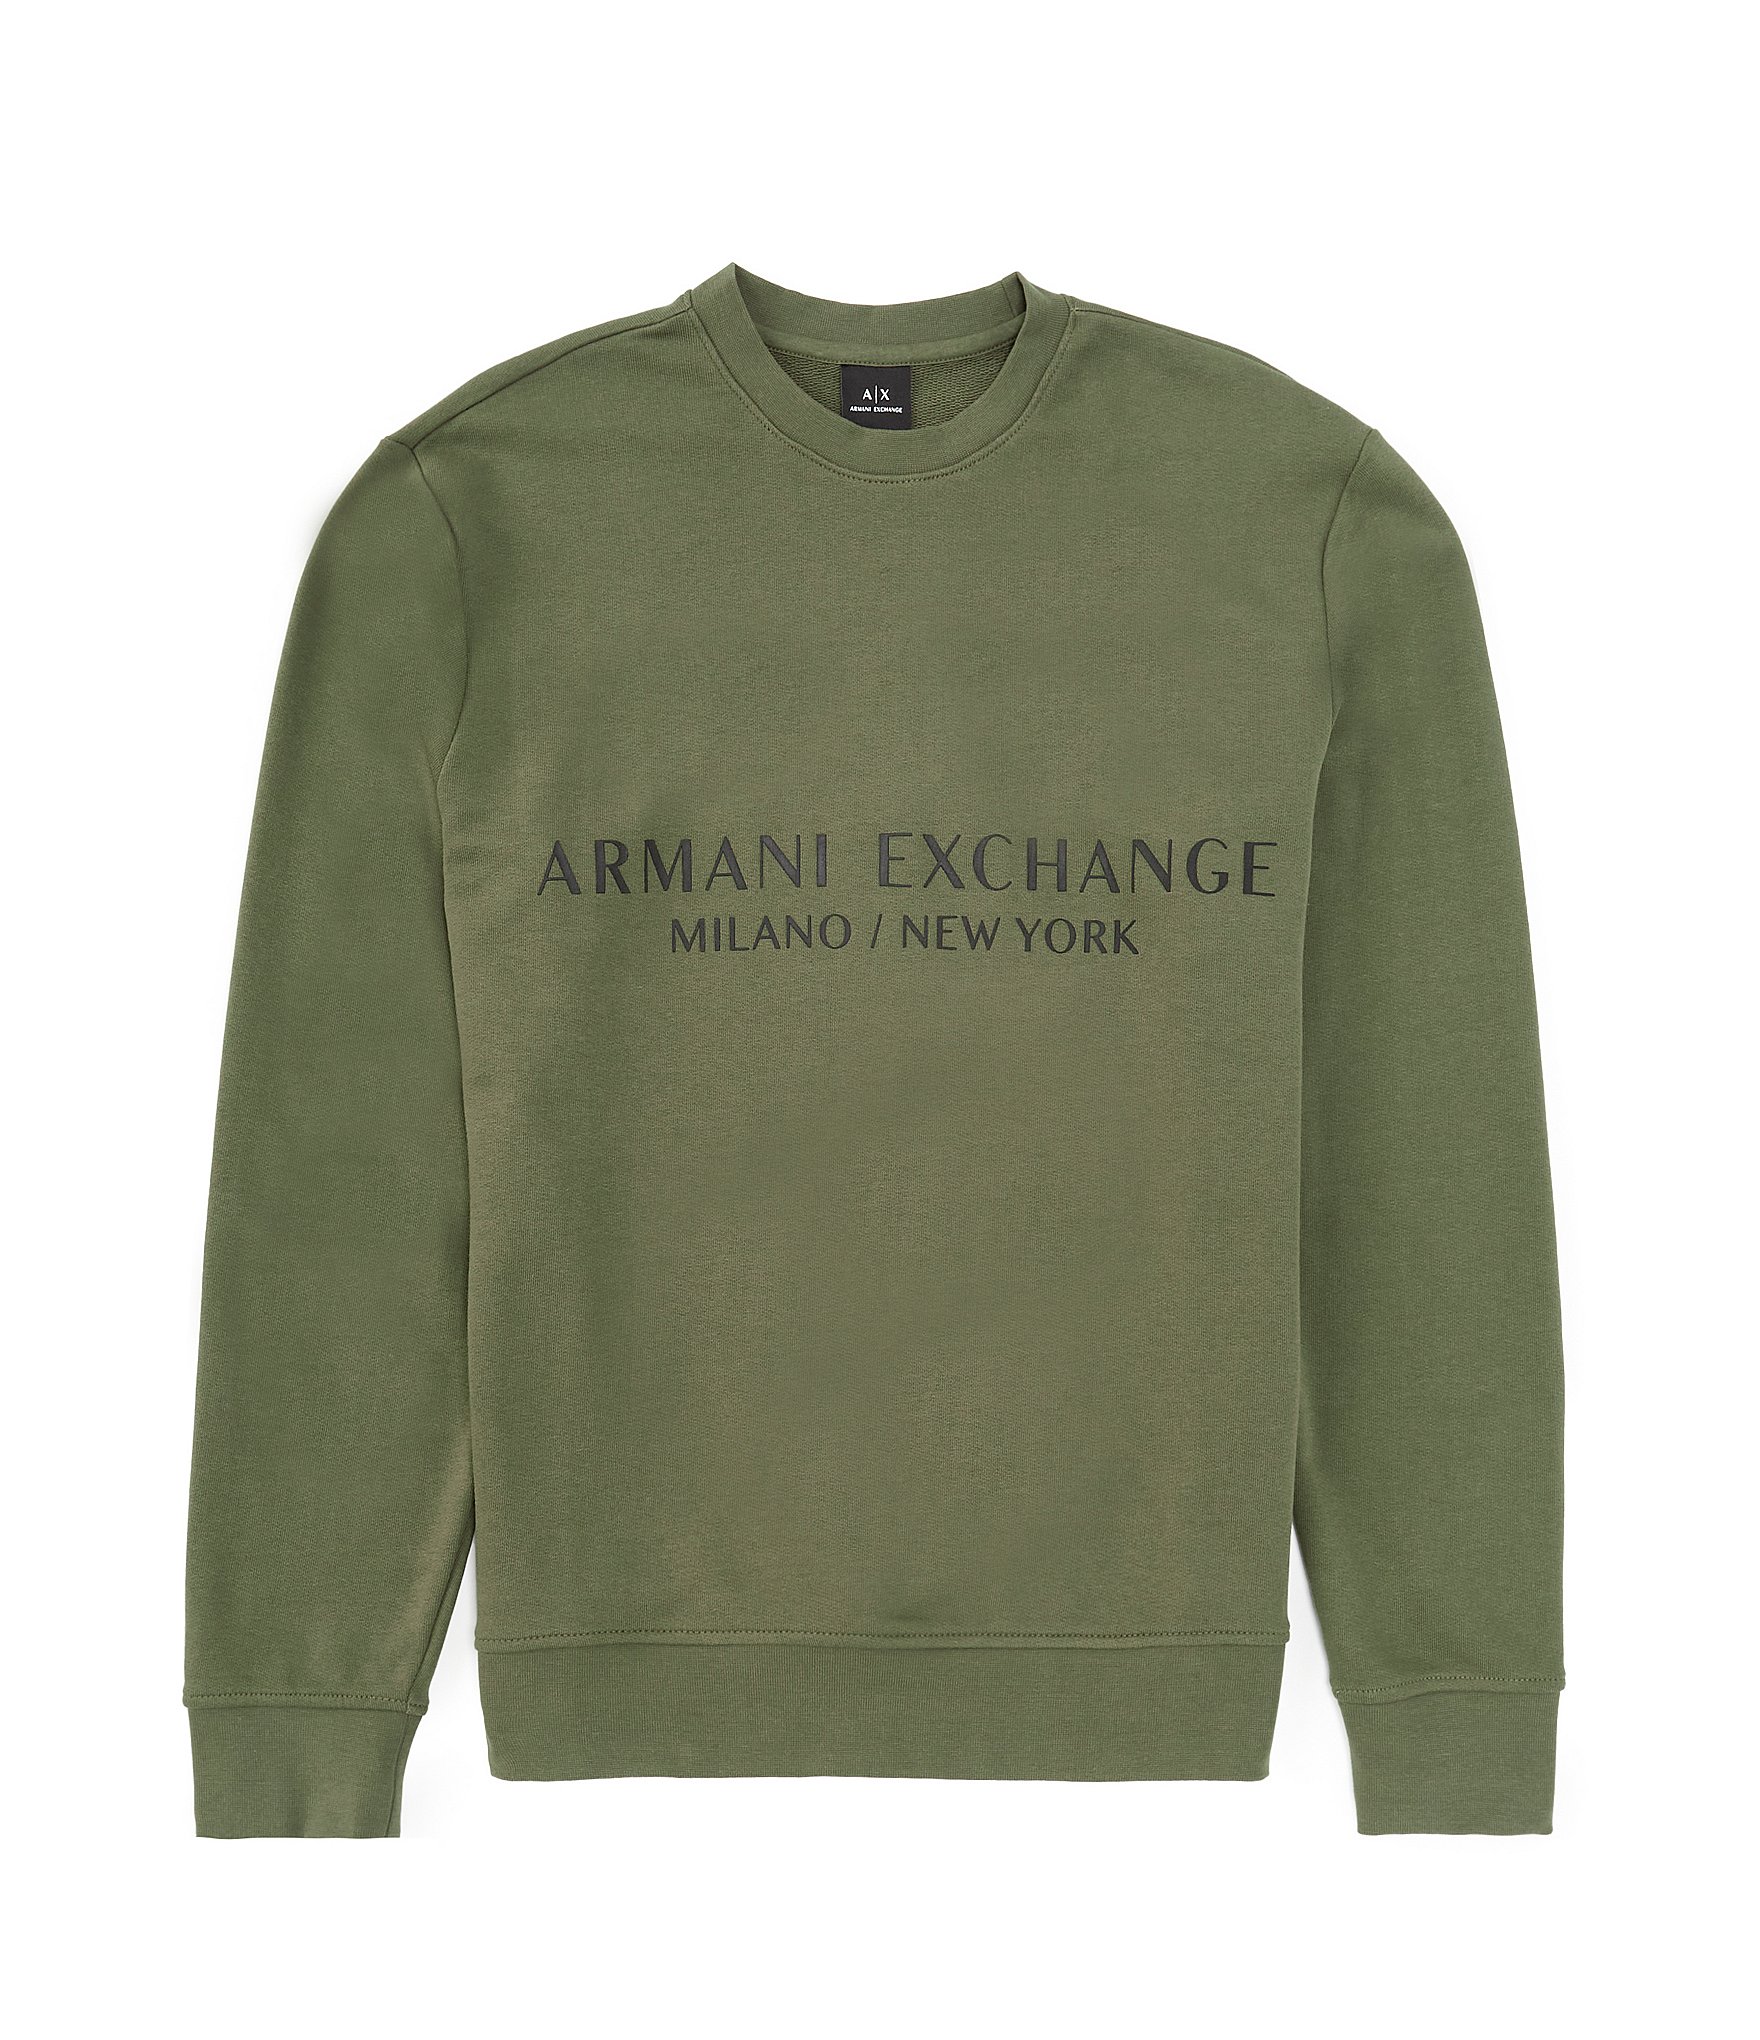 Armani Exchange Milano NY Sweatshirt | Dillard's